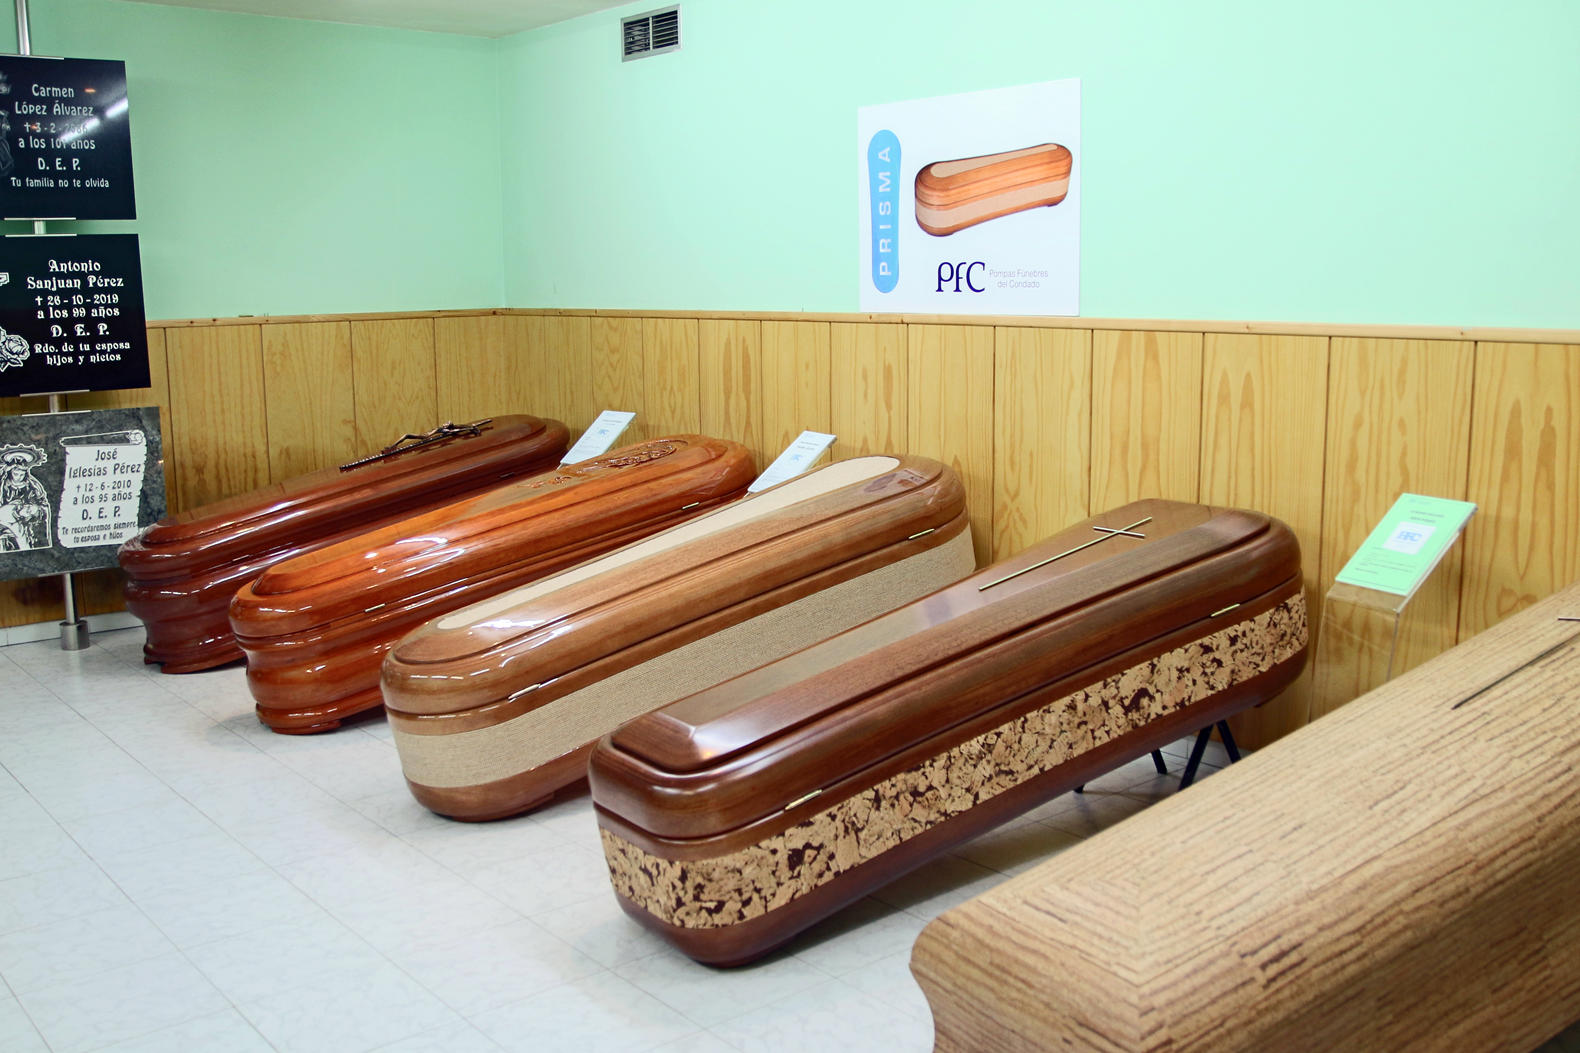 Images Pompas fúnebres del Condado-Tanatorio Ponteareas